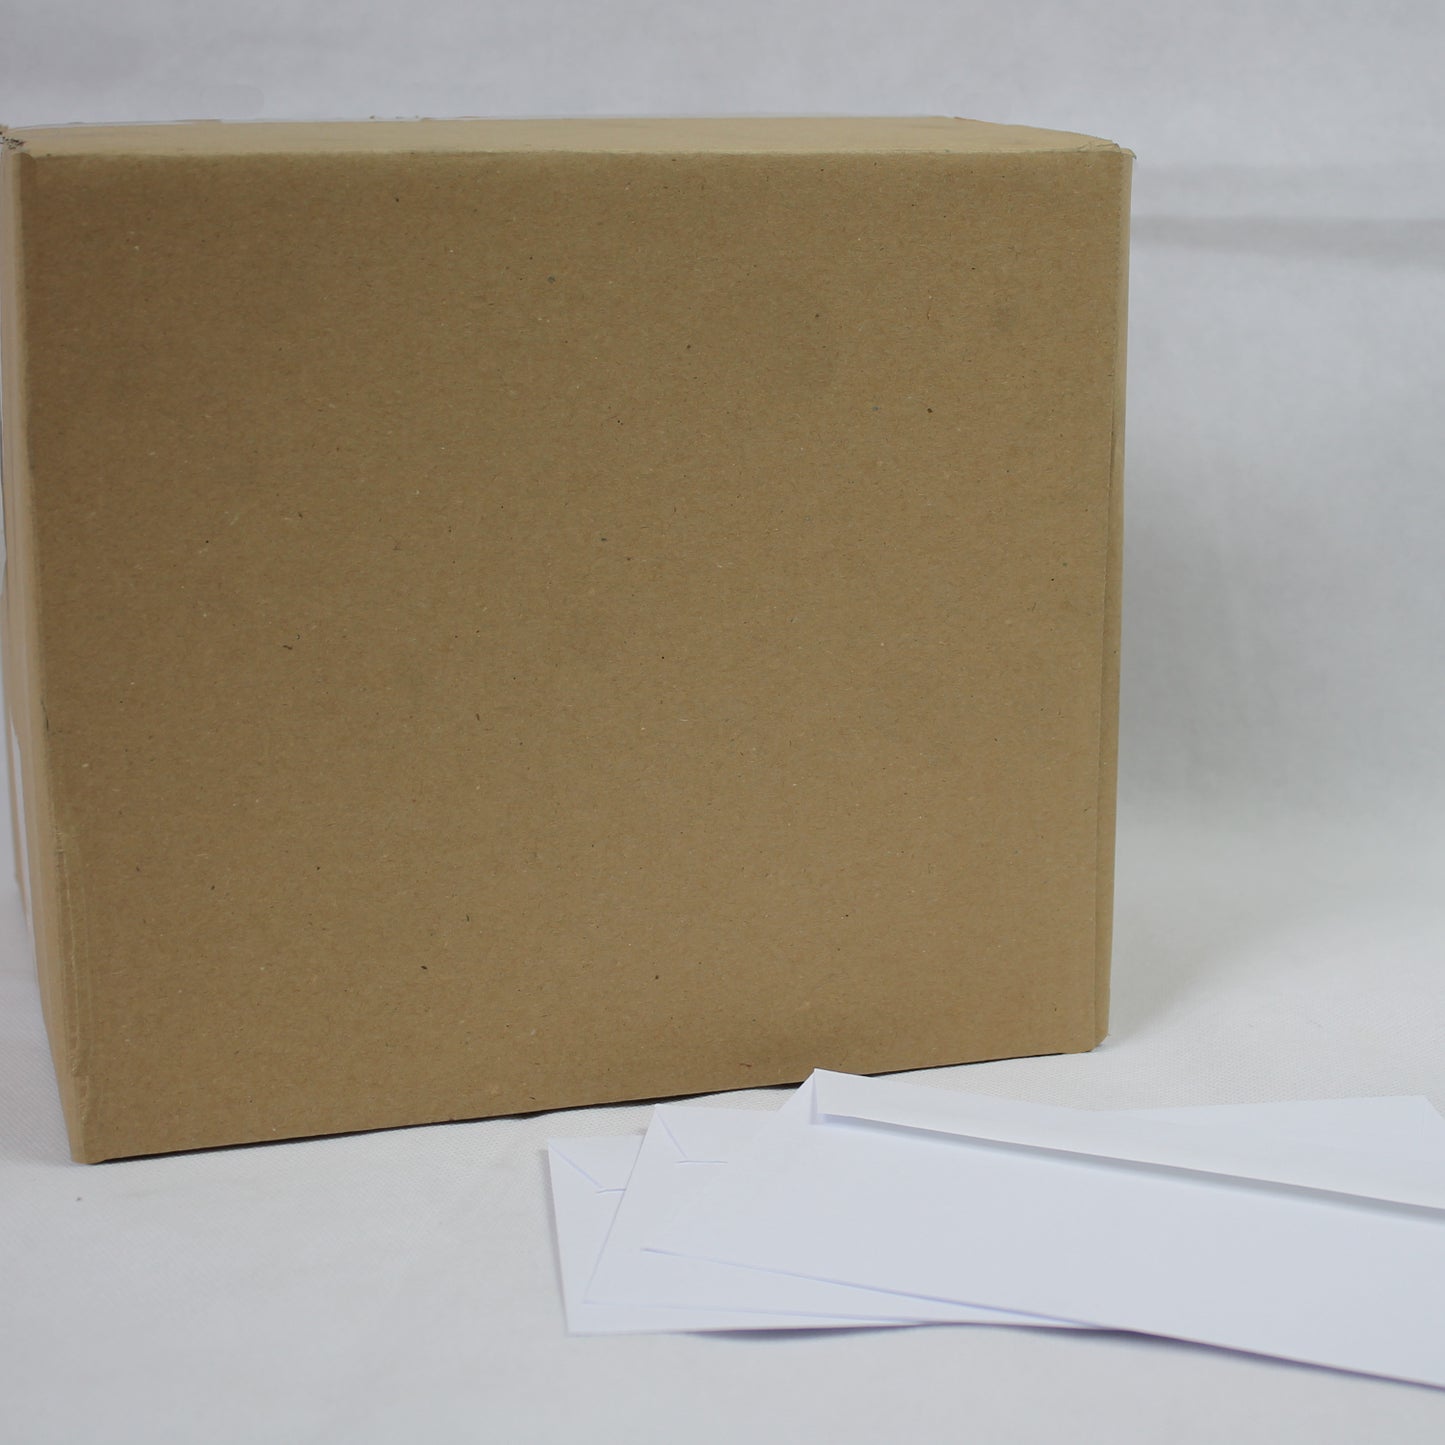 102x205mm White Gummed Envelopes (None Window)